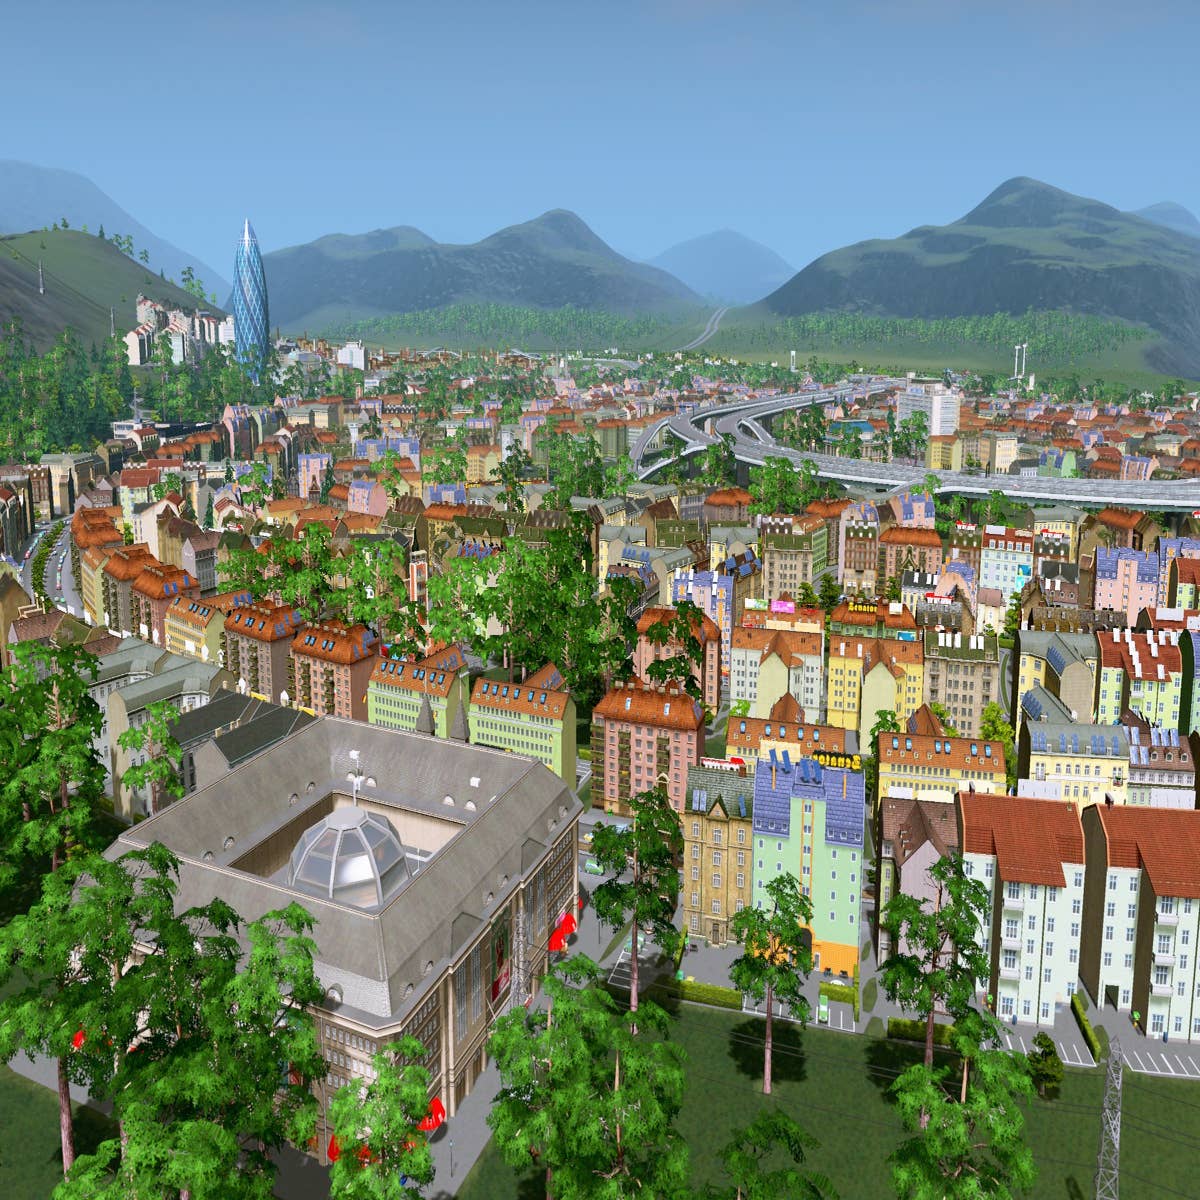 Cities: Skylines 2  Comunidade cria cidade para benchmarks